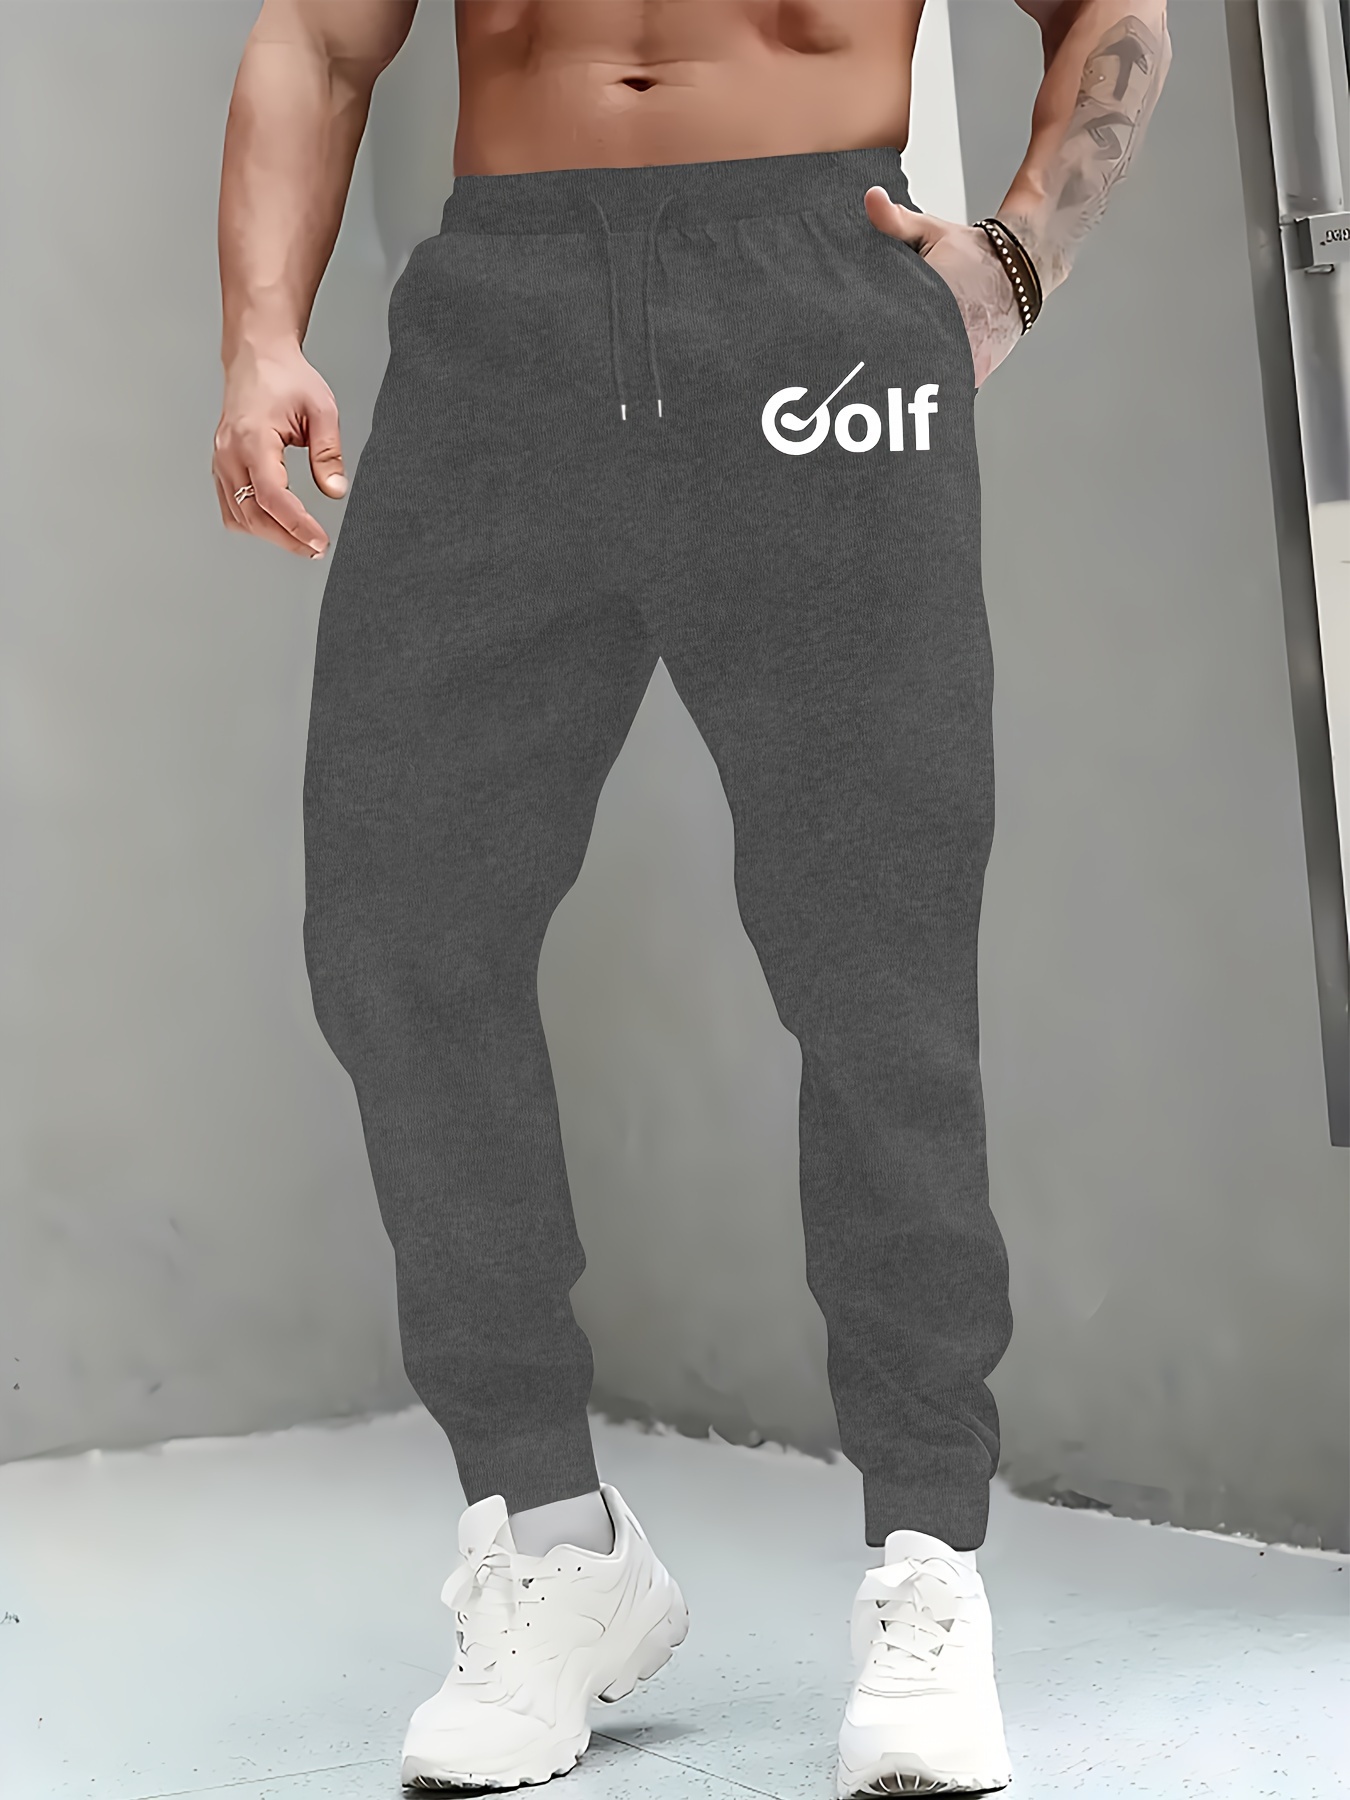 Golf Pants Men - Temu Canada